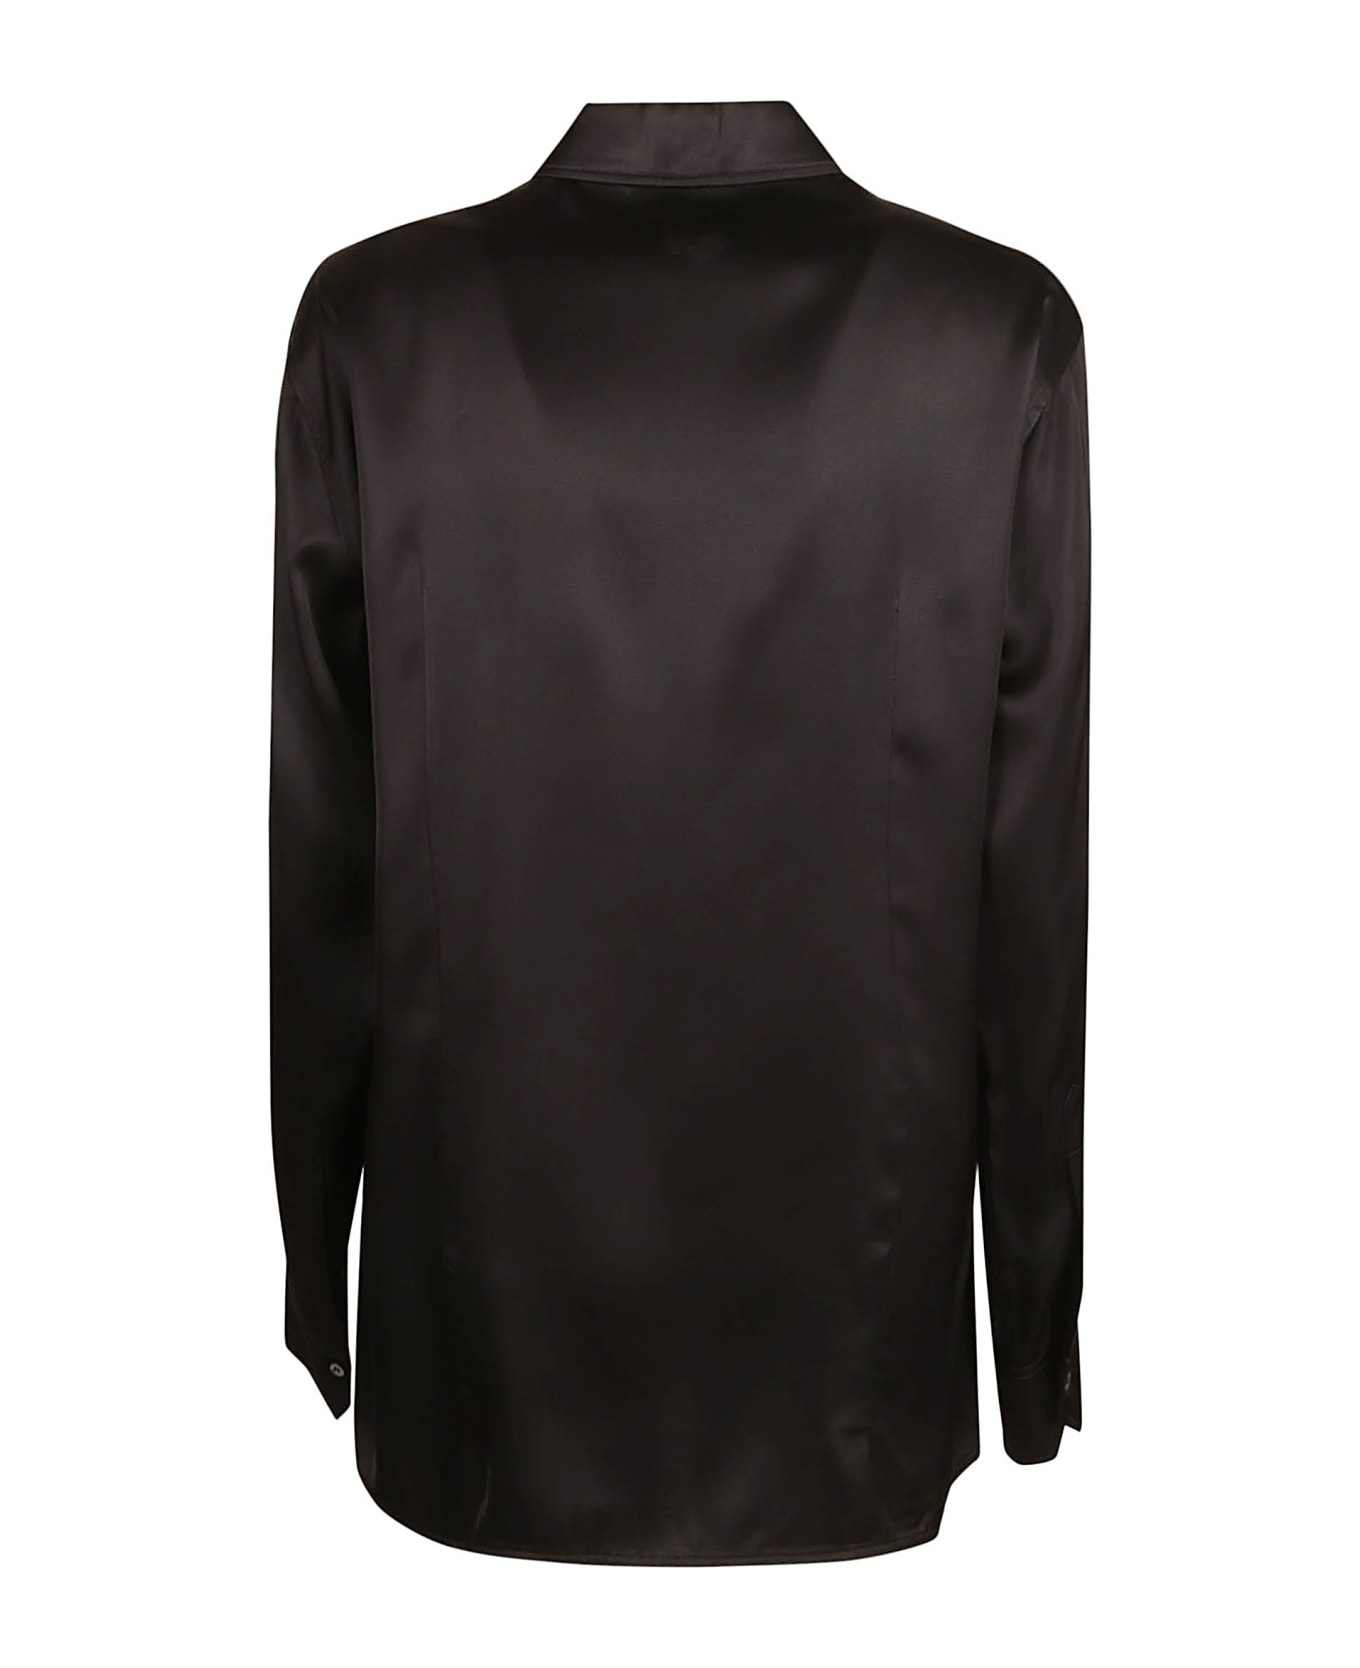 N.21 Embellished Long-sleeved Shirt - Black シャツ